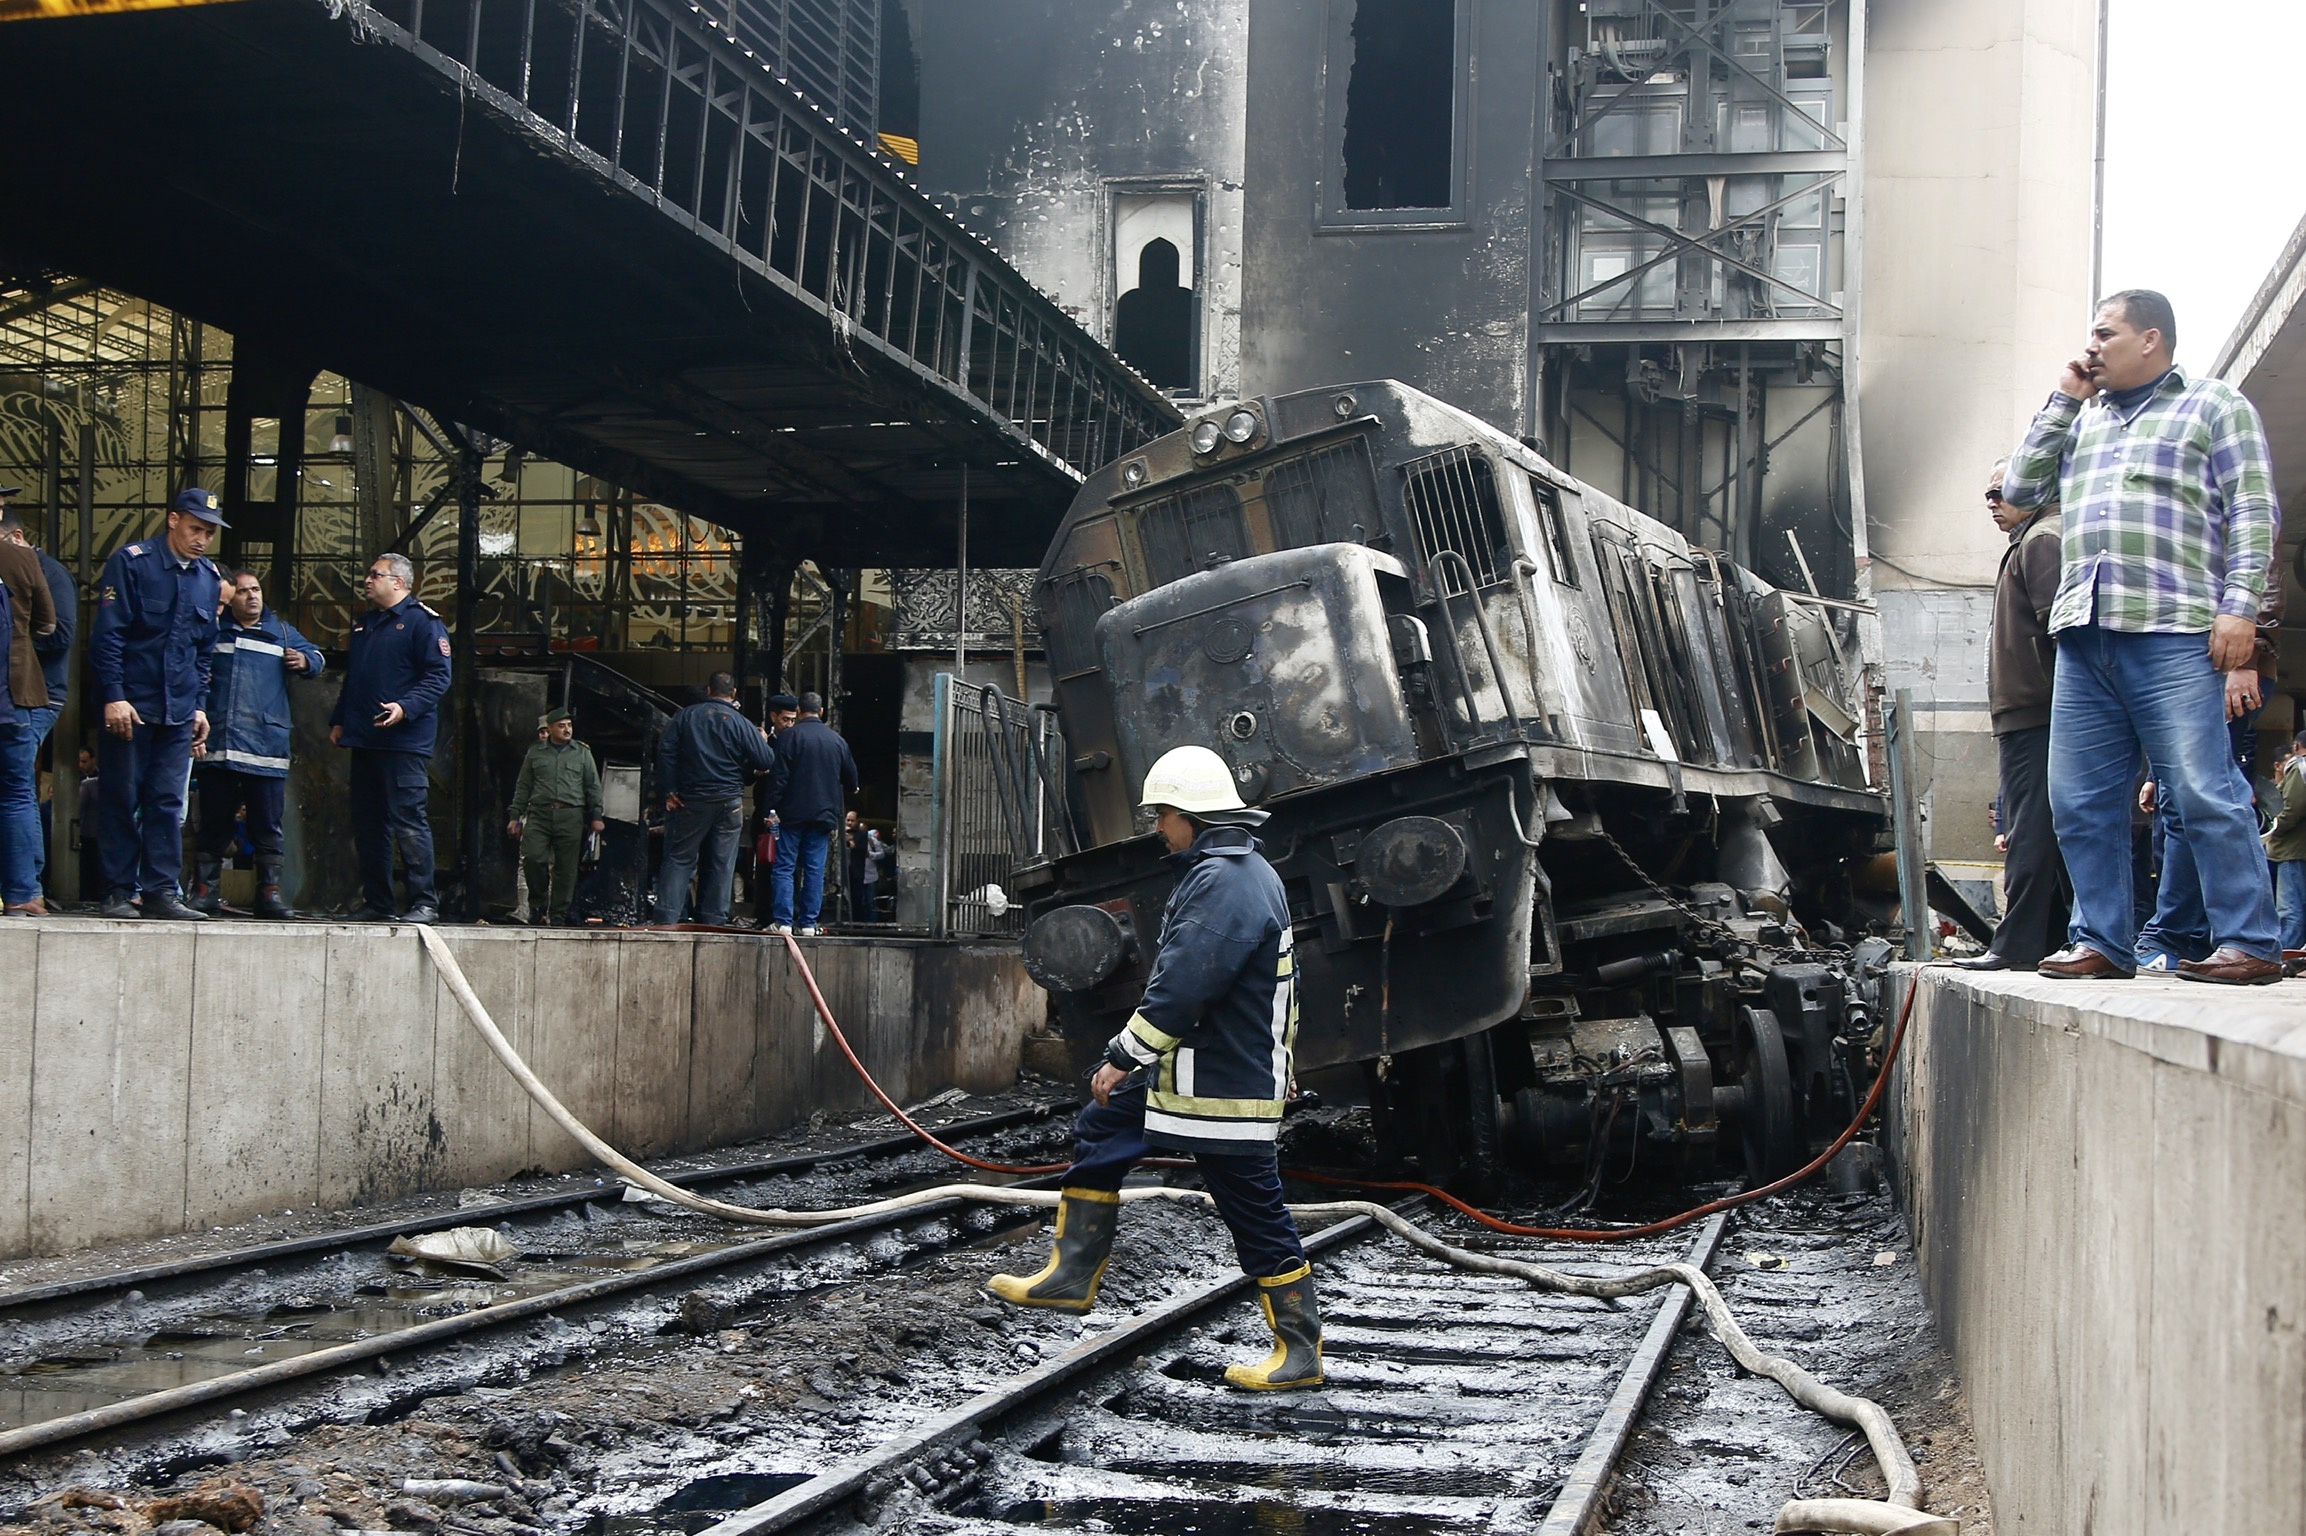 Kigyulladt a szerelvény, és meghalt 25 ember, miután menet közben összeverekedett két mozdonyvezető Kairóban